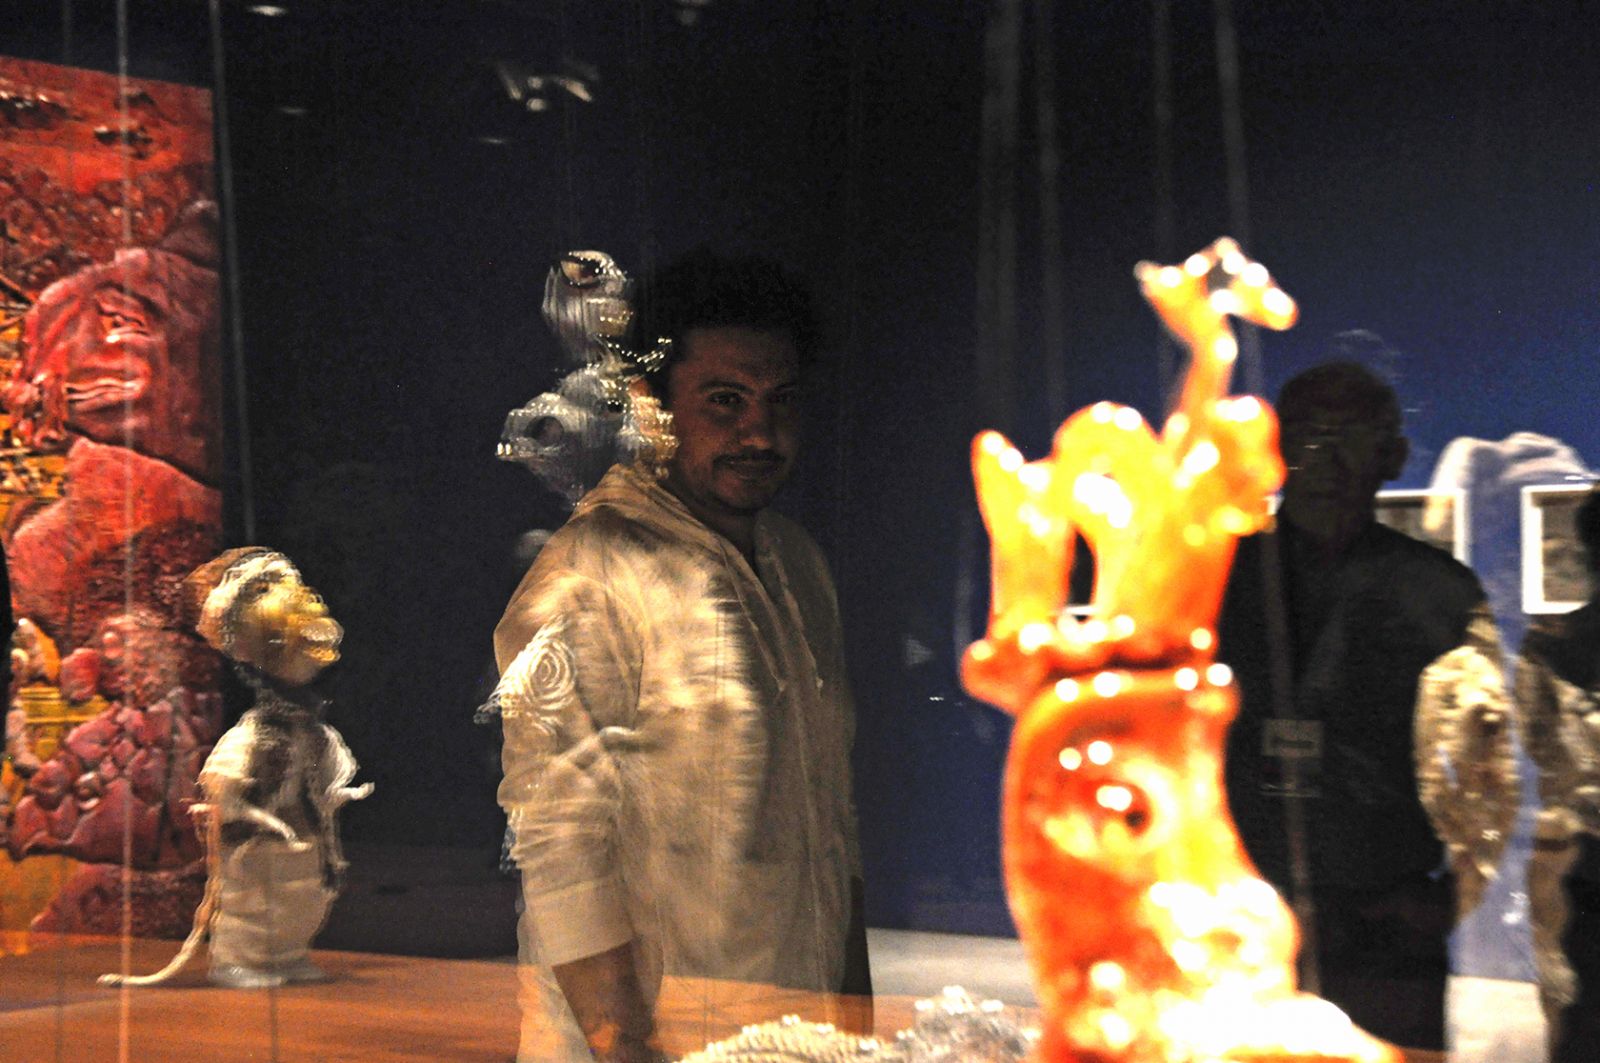 Vi er allesammen manipulerede marionetter</br>Wael Shawky bag det vitrineskab, som viser hans marionetter i glas.</br>Foto: Kulturmagasinet Fine Spind